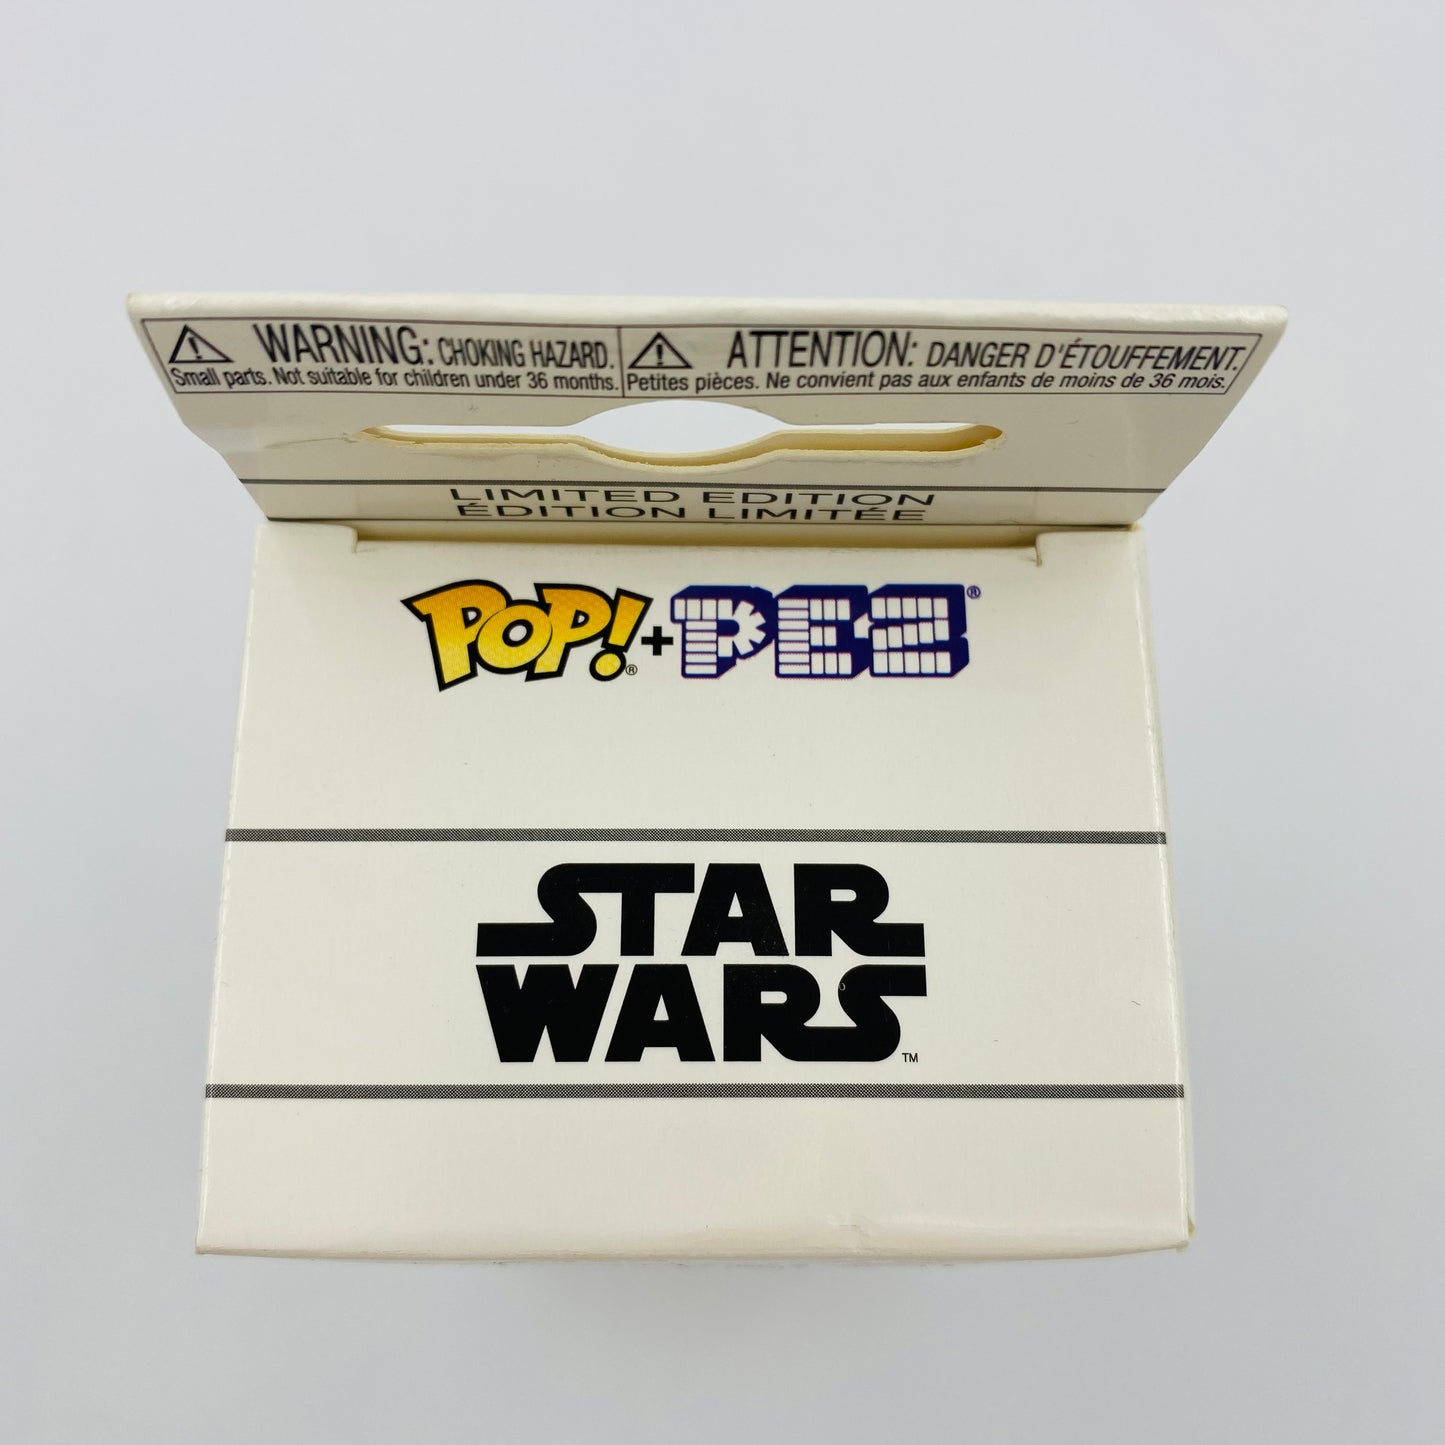 Star Wars Tusken Raider Pop! + PEZ dispenser (2018) boxed